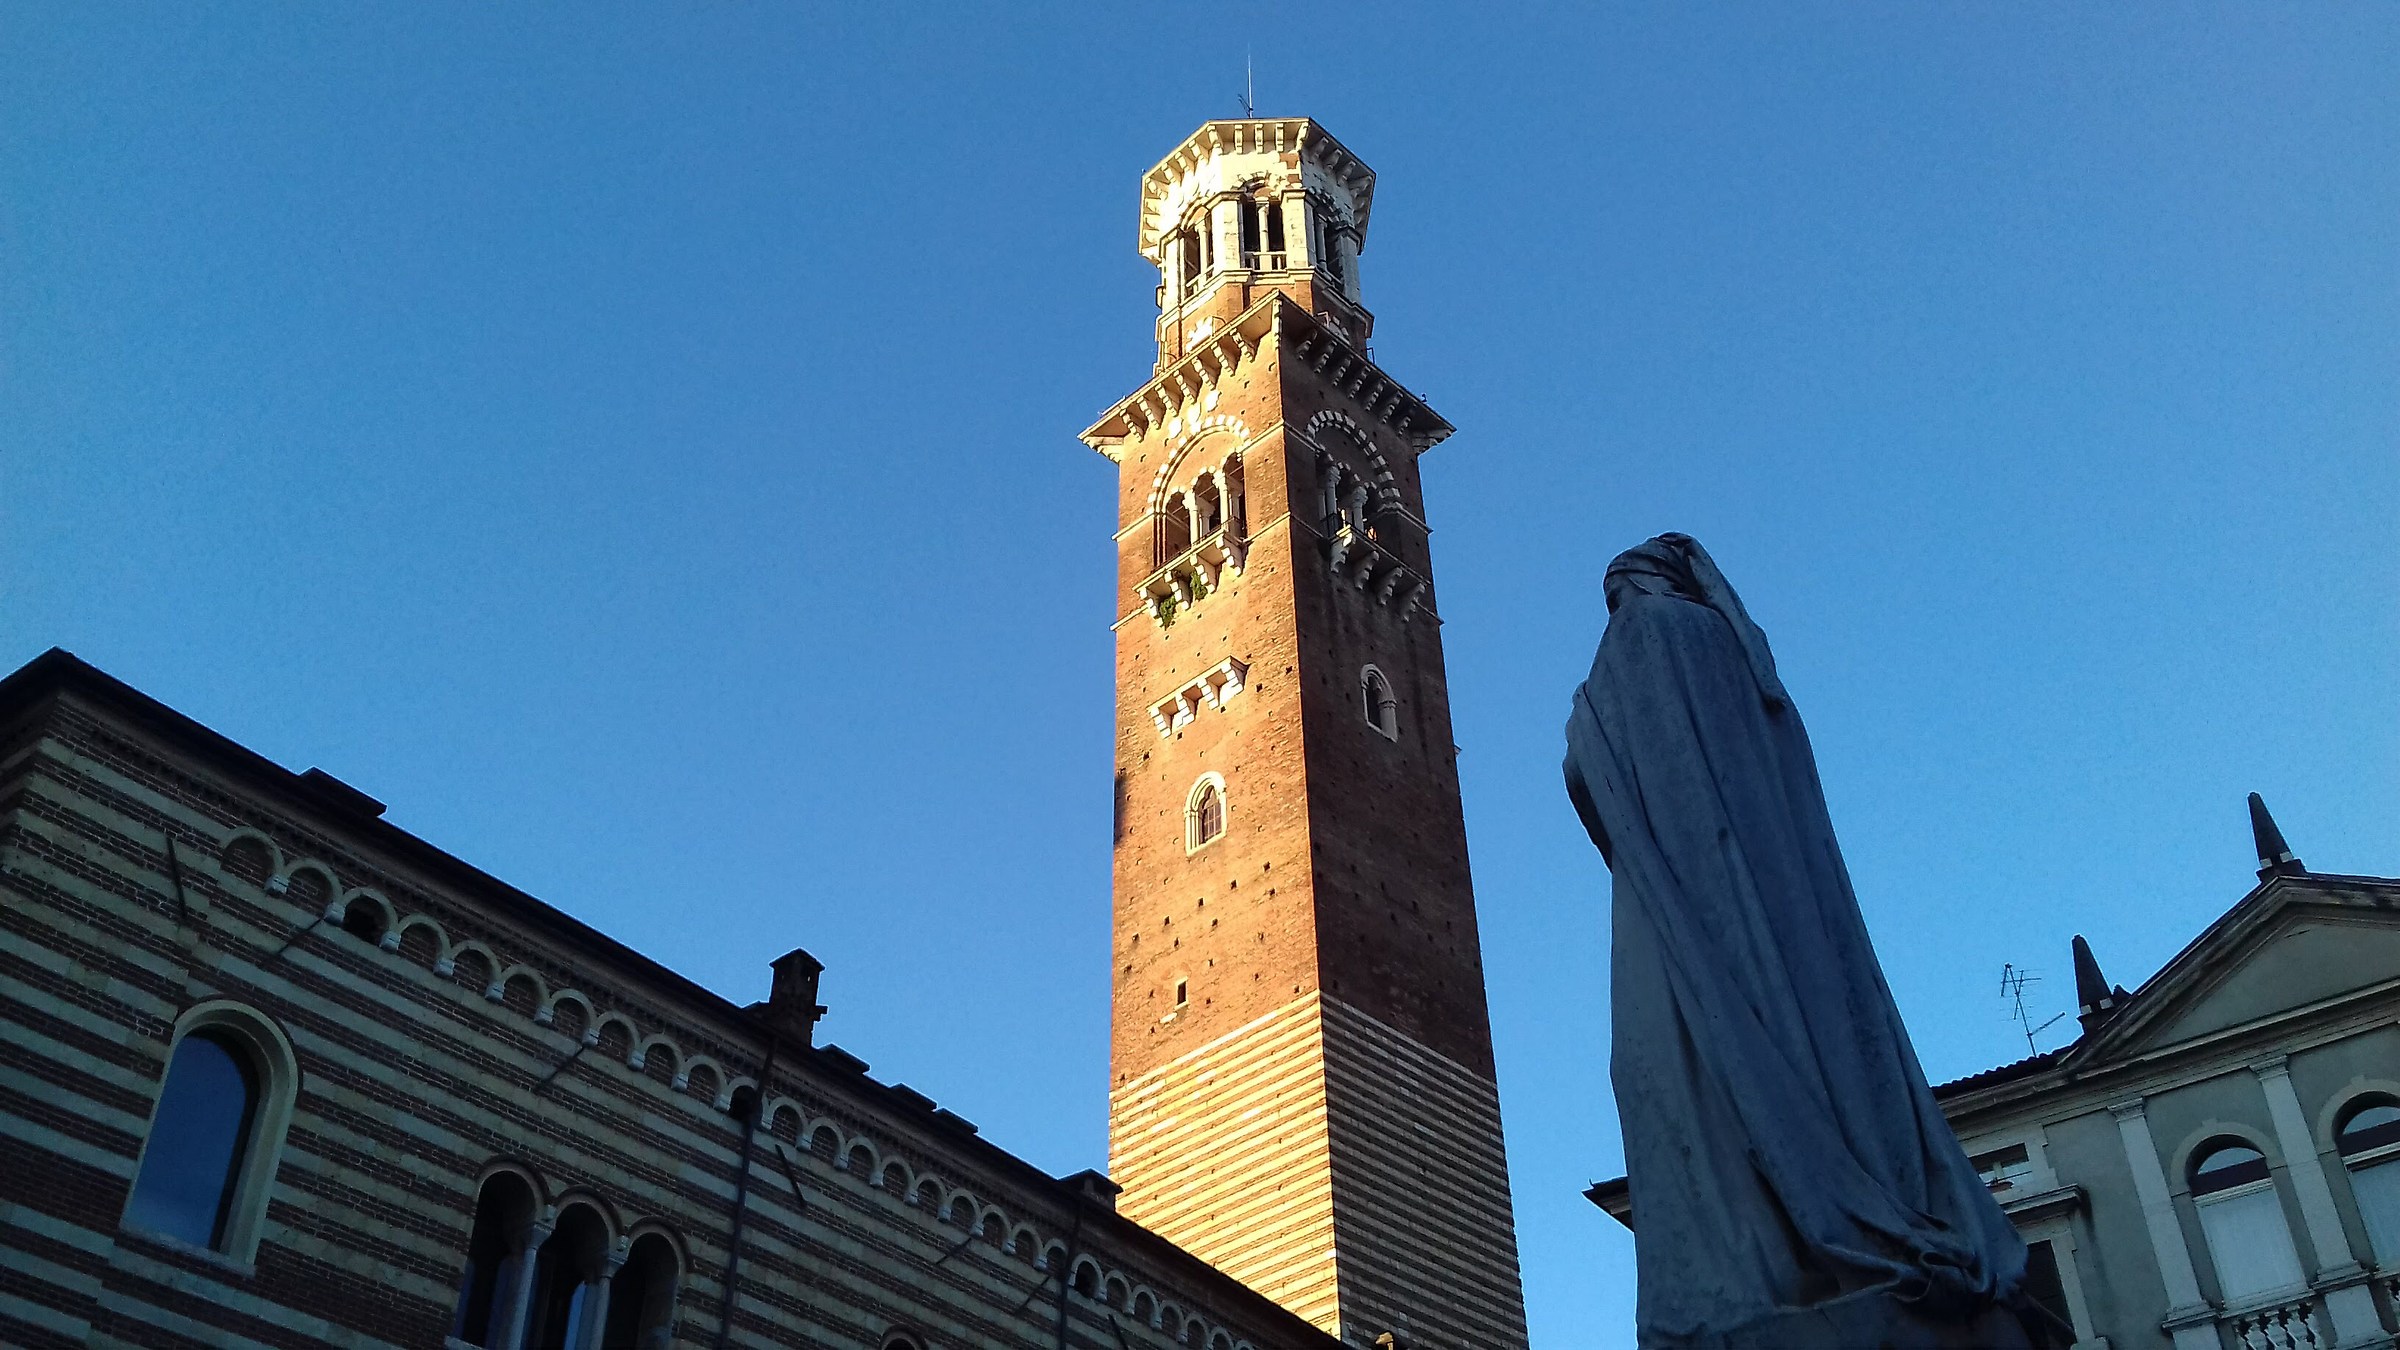 Dante che ammira la bellezza di torre dei Lamberti...